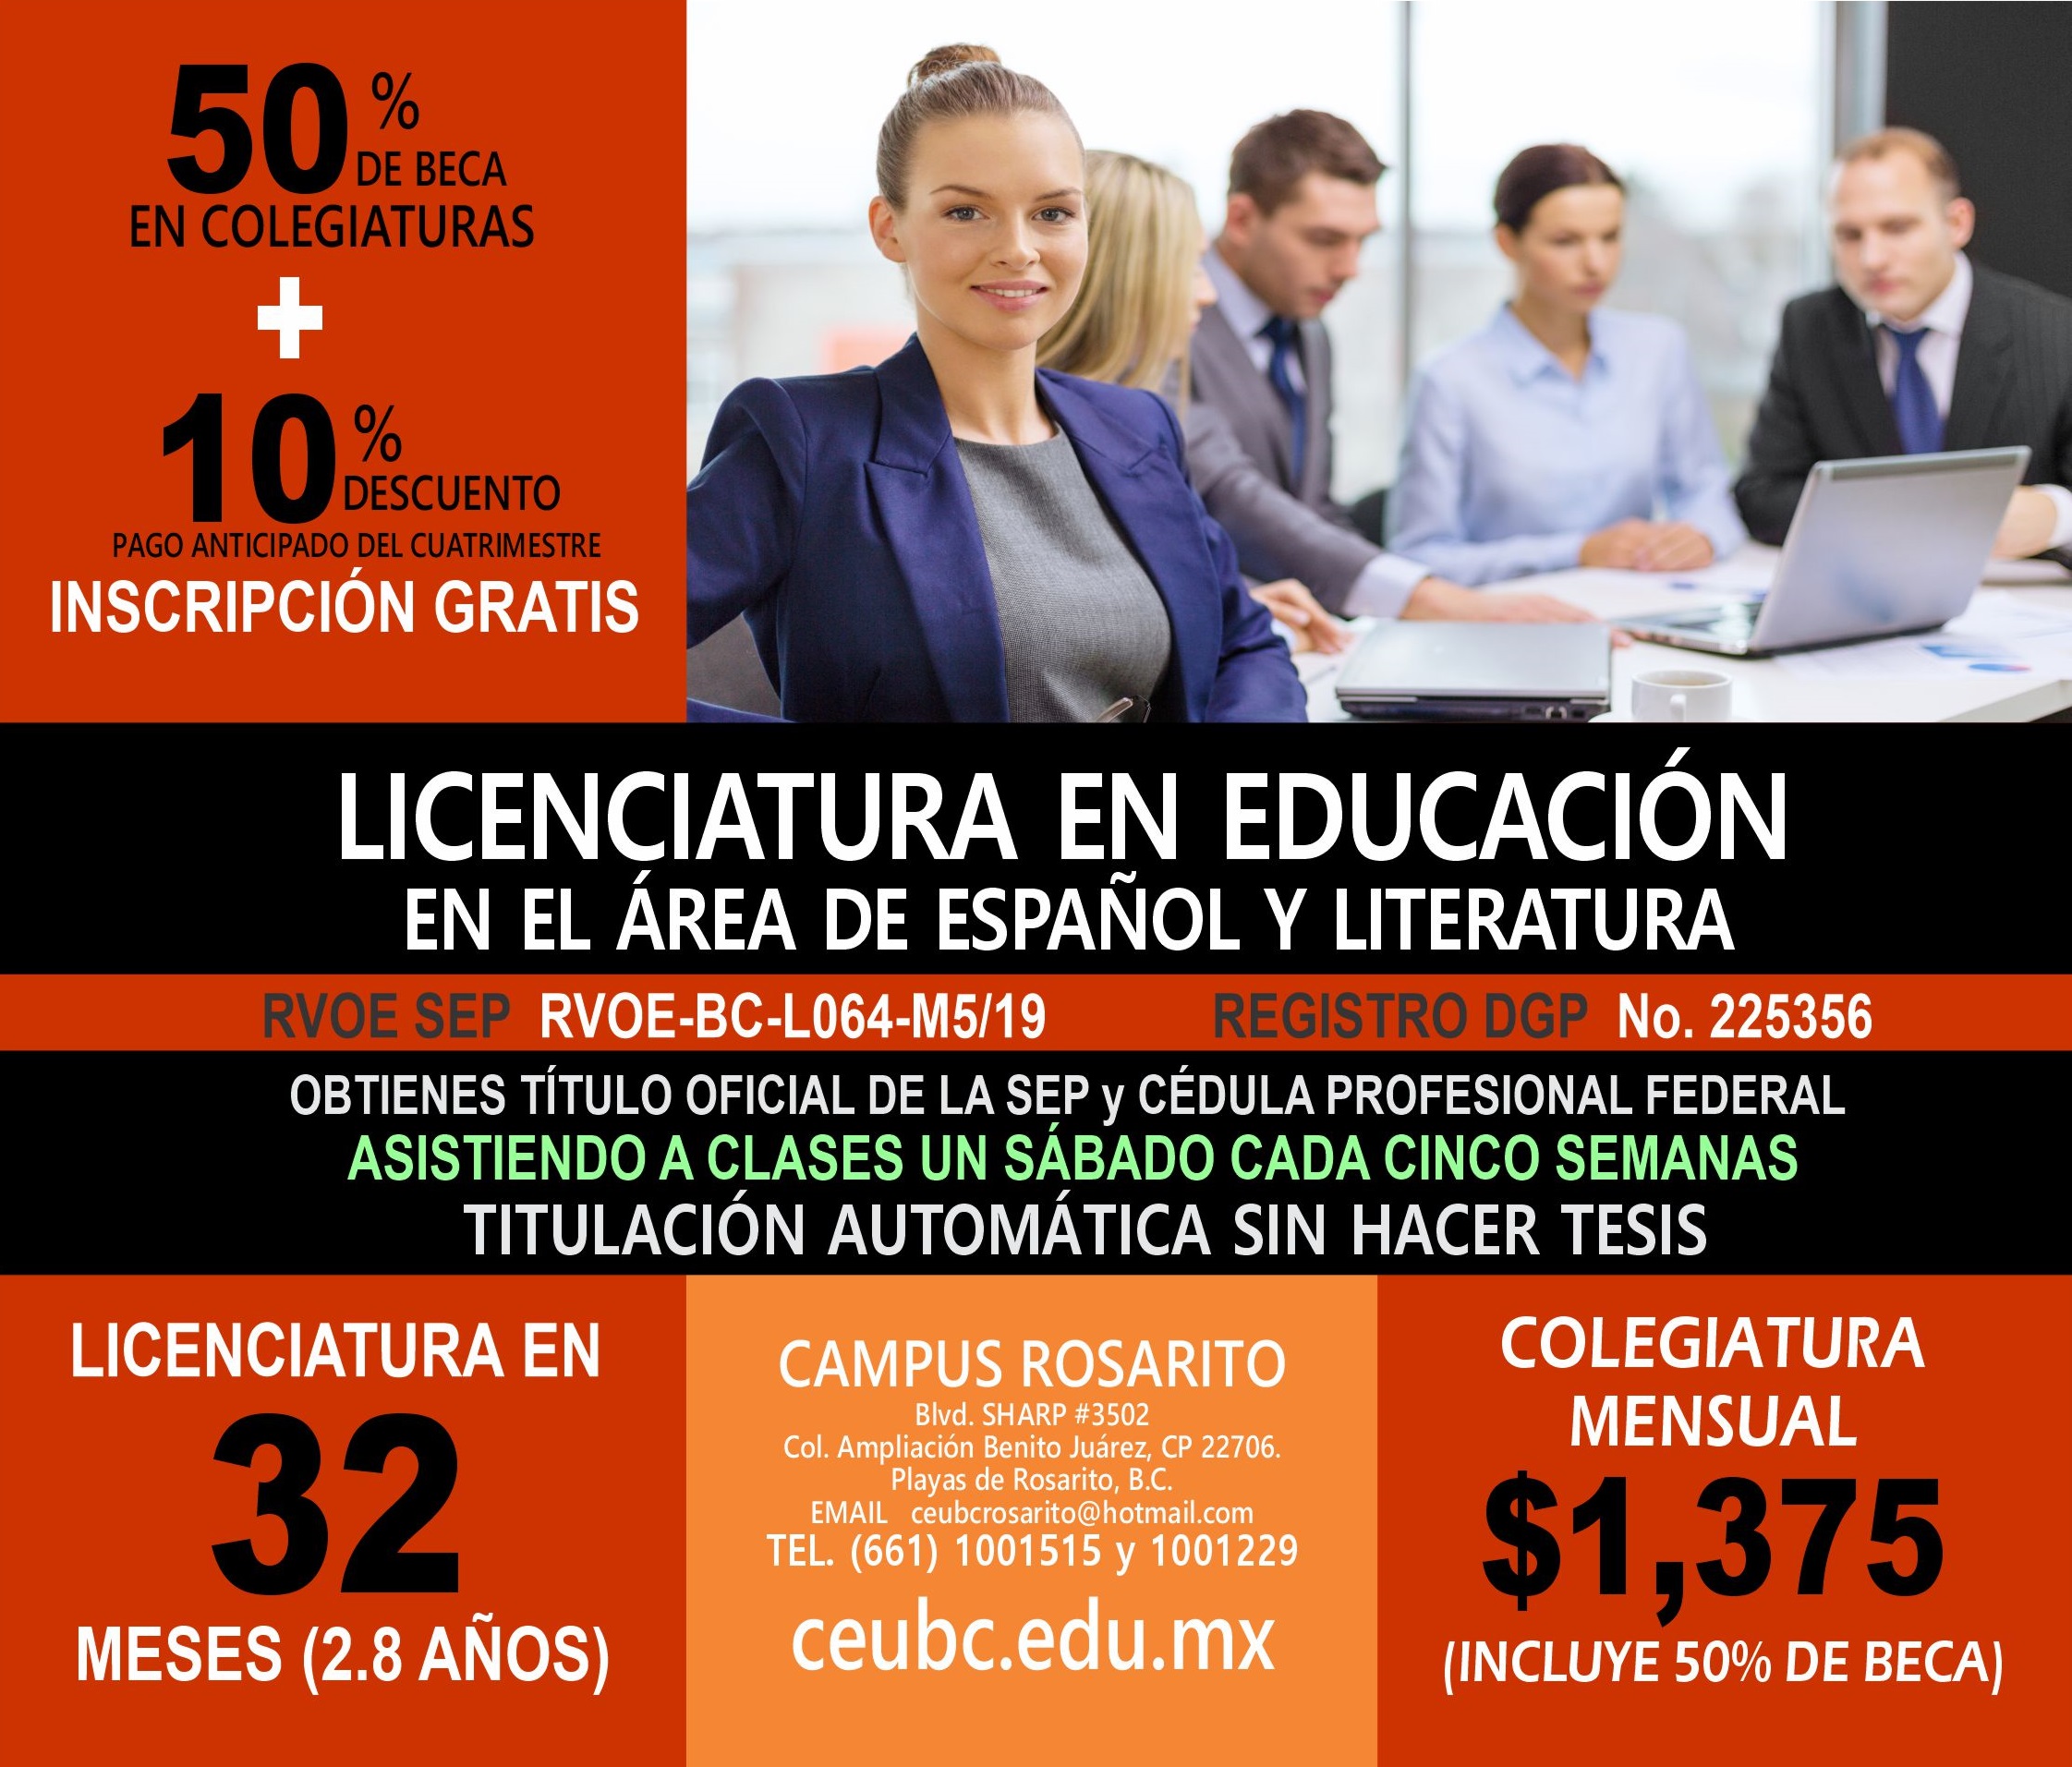 RVOE oficial: Licenciatura en Educación en el Área de Español y Literatura